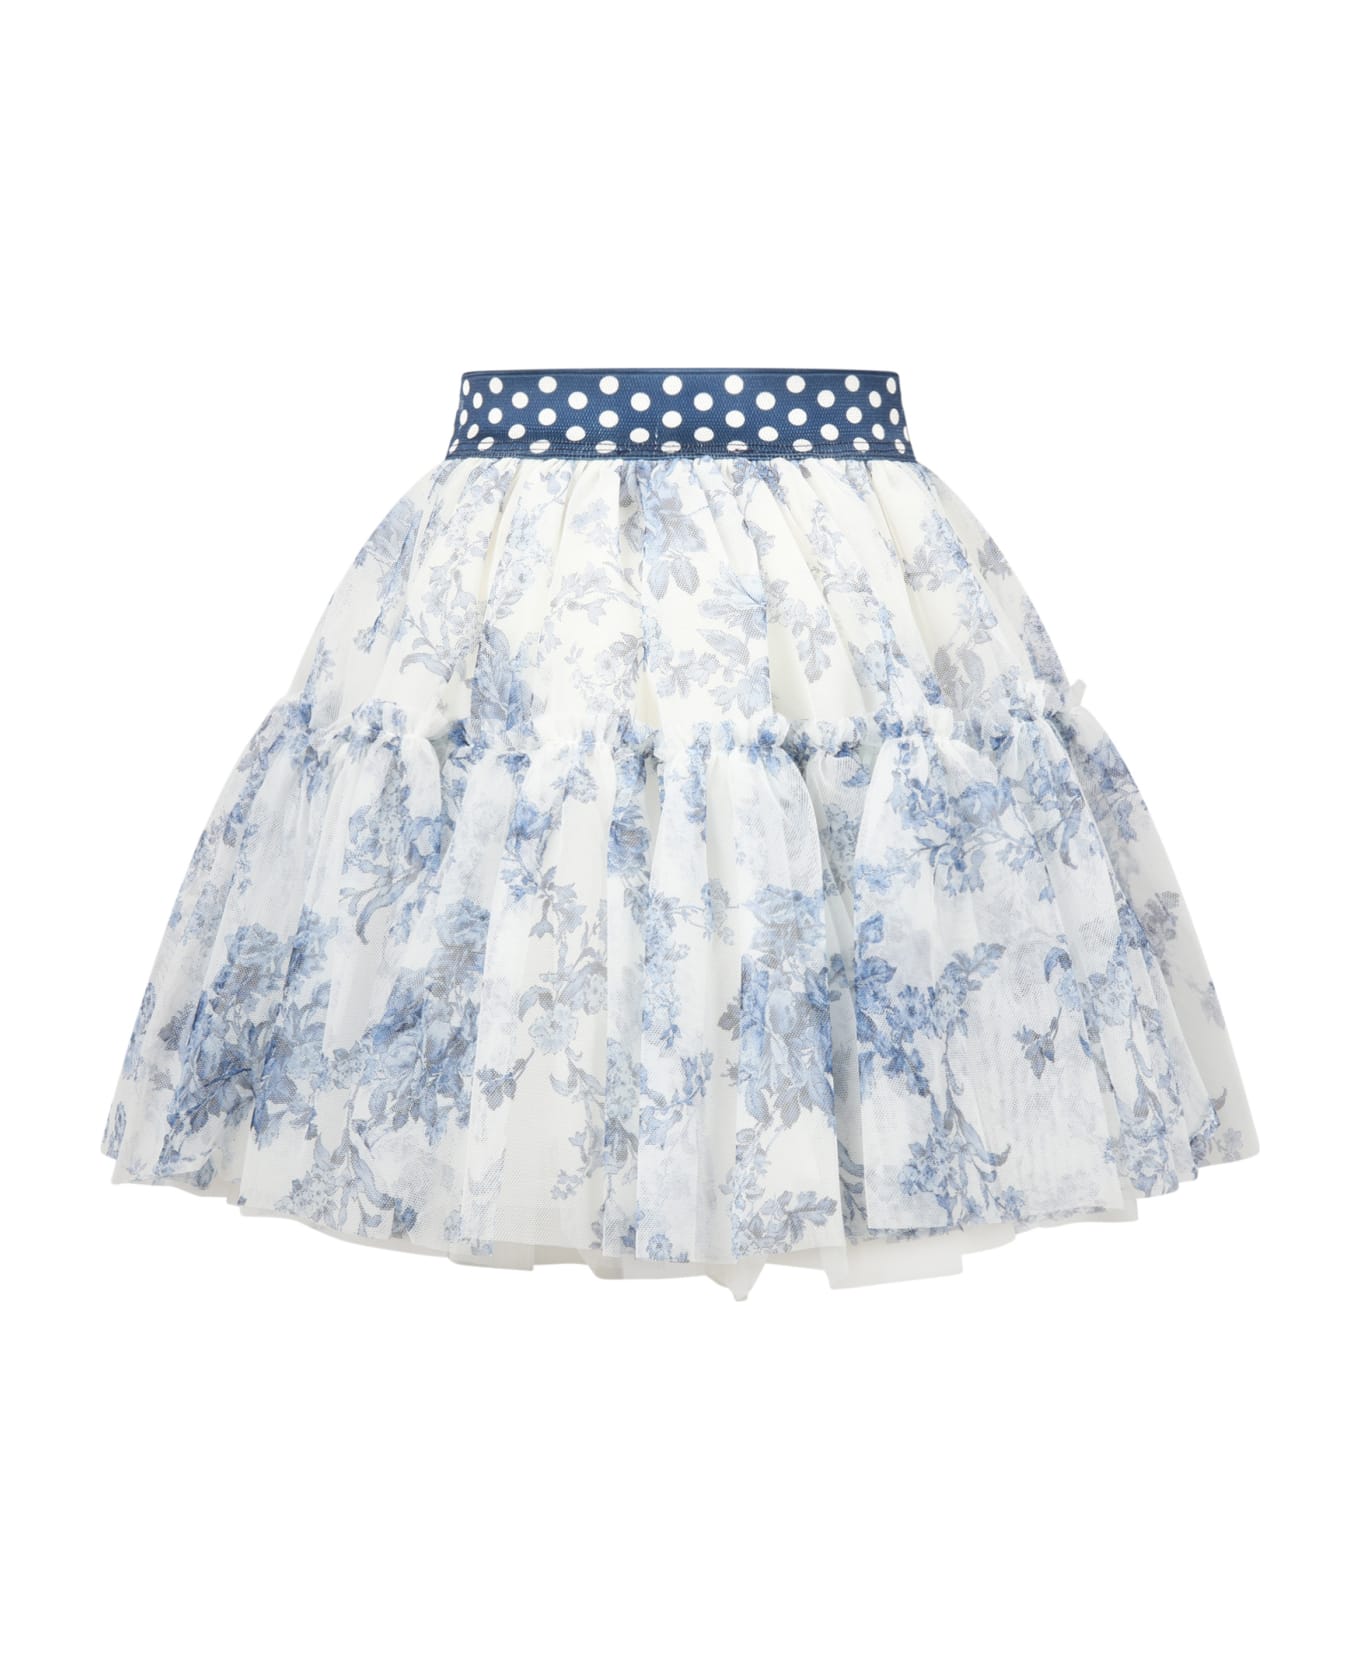 Monnalisa White Skirt For Girl With Flowes - White